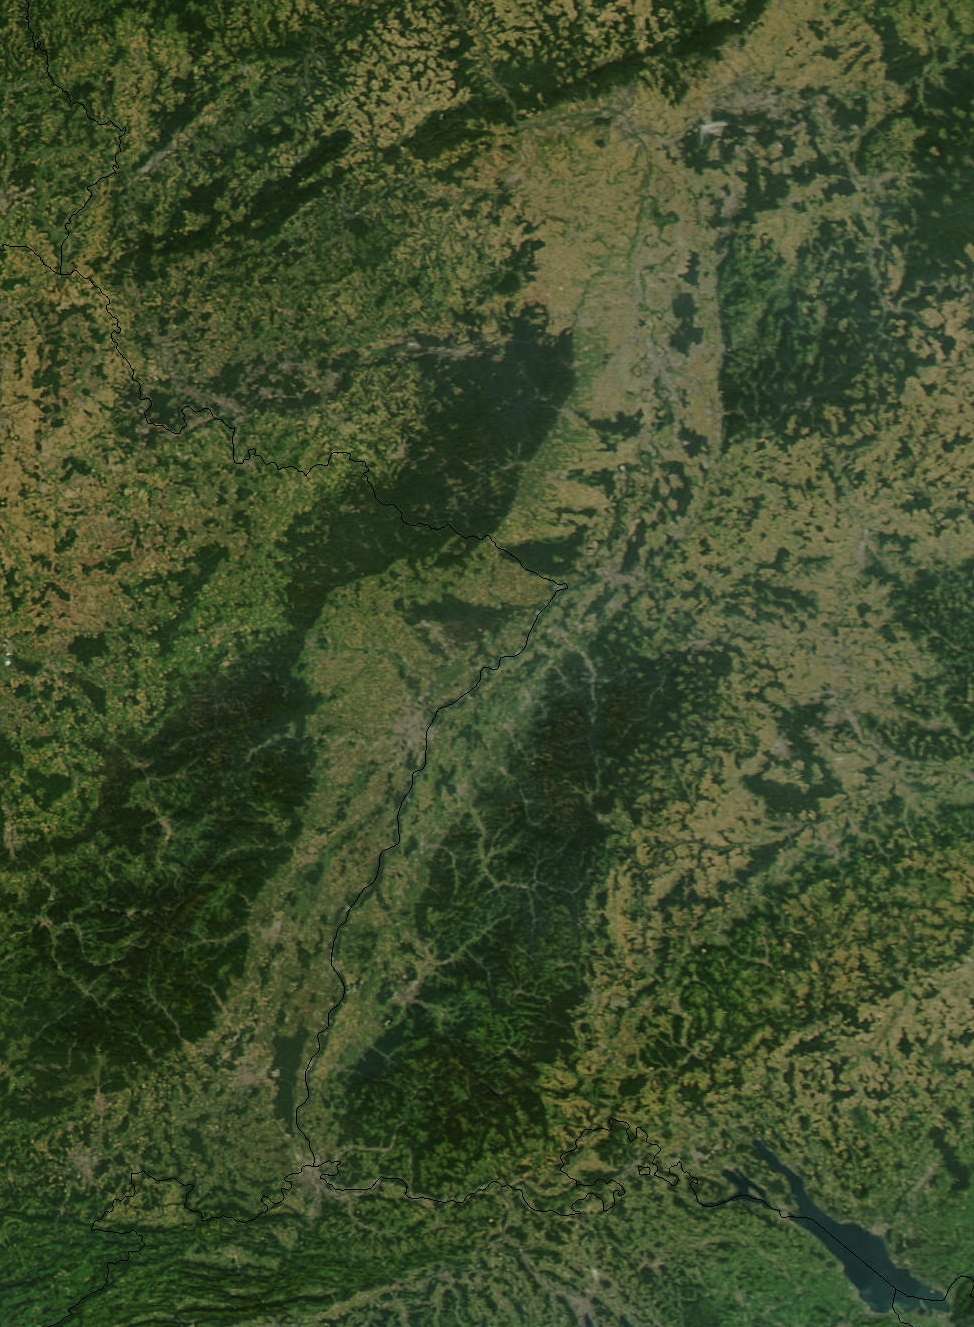 Image vue du ciel du fossé rhénan, d’orientation nord-sud, bordé à l’ouest, le massif des Vosges, à l’est le massif de la Forêt-Noire © Nasa, Wikimédia Commons